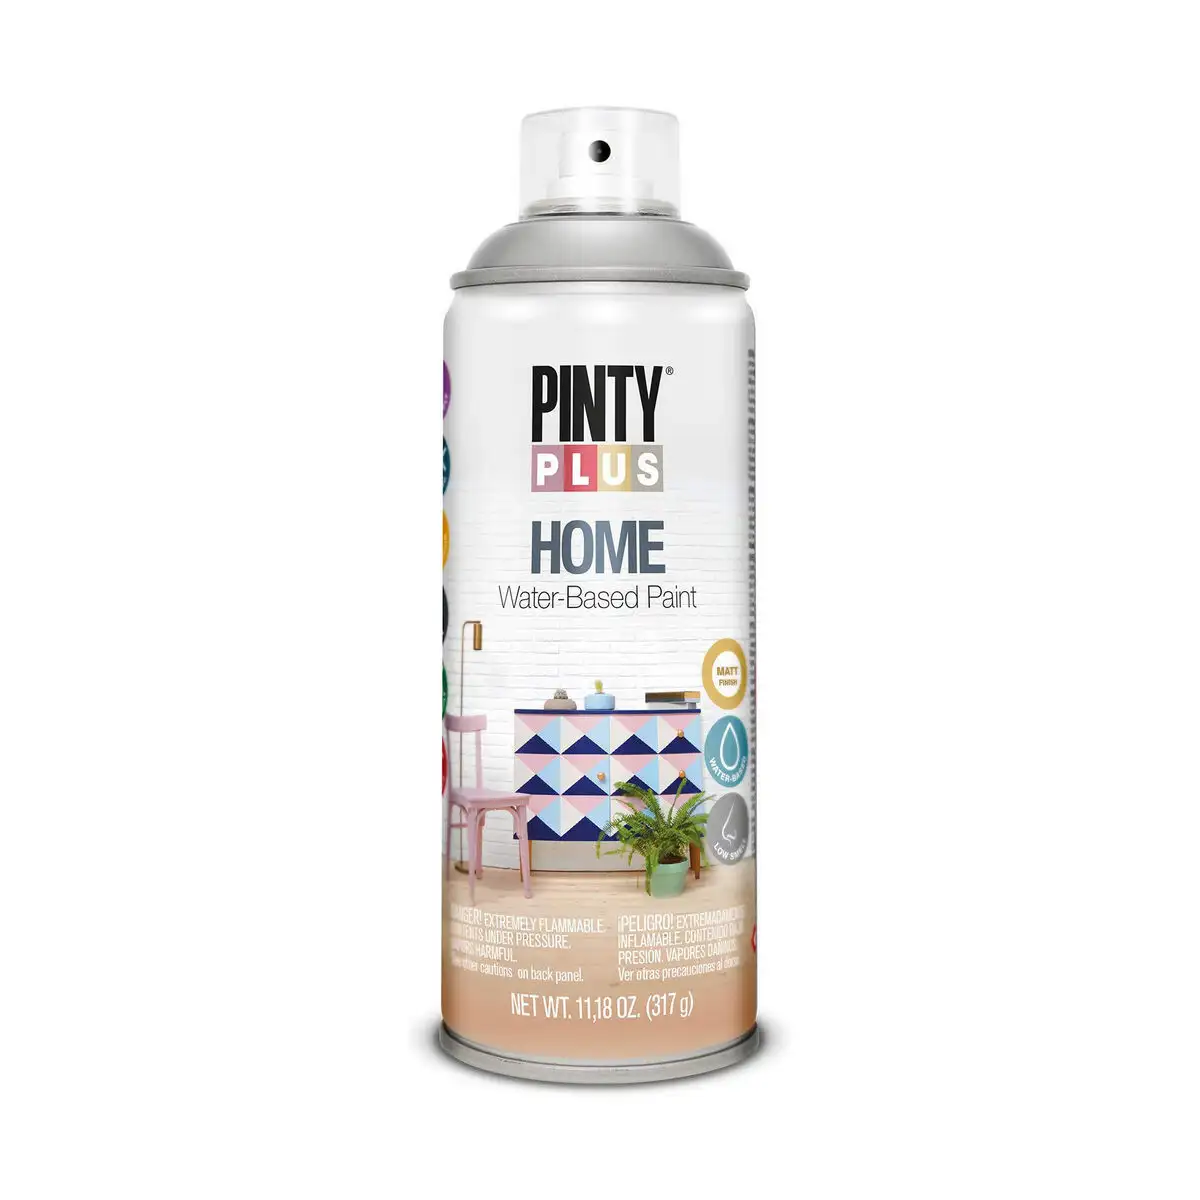 Peinture en spray pintyplus home hm417 400 ml rainy grey_8228. Bienvenue chez DIAYTAR SENEGAL - Où le Shopping Devient une Aventure. Découvrez notre collection diversifiée et explorez des produits qui reflètent la diversité du Sénégal.